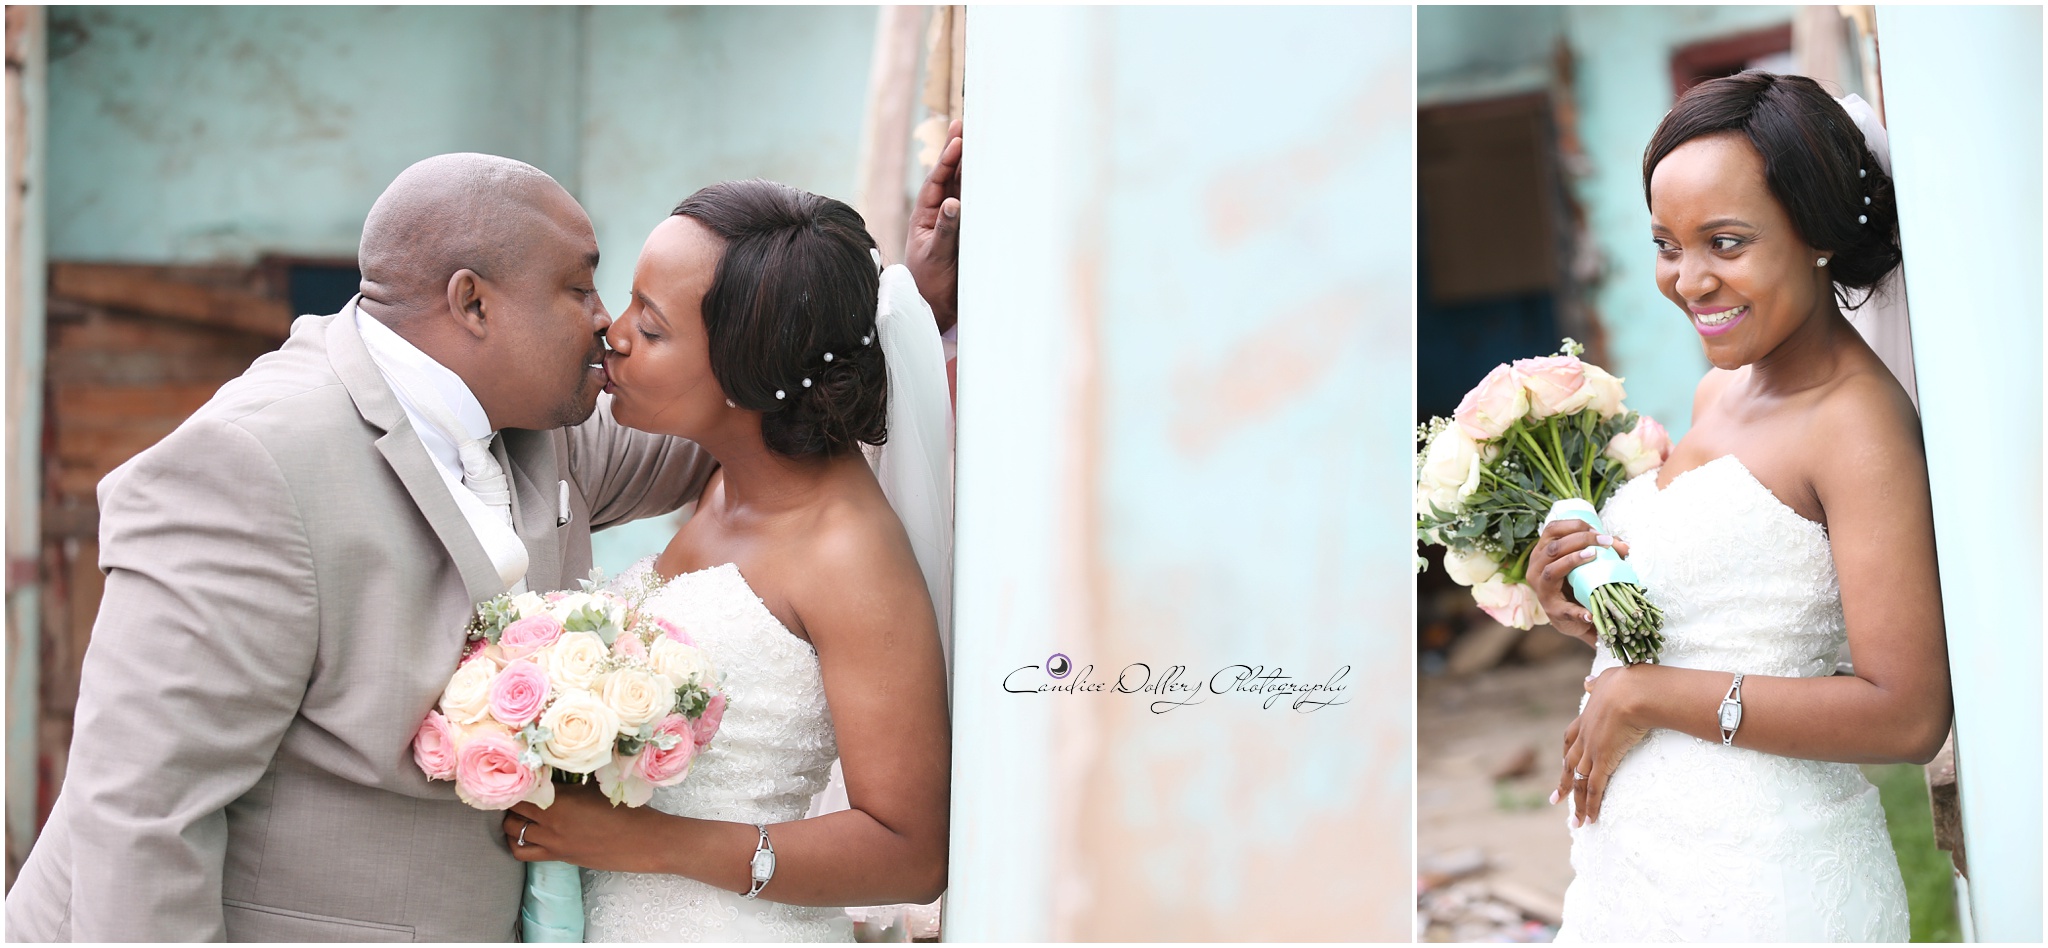 Masivuye & Khuselo's Wedding - Candice Dollery Photography_7291